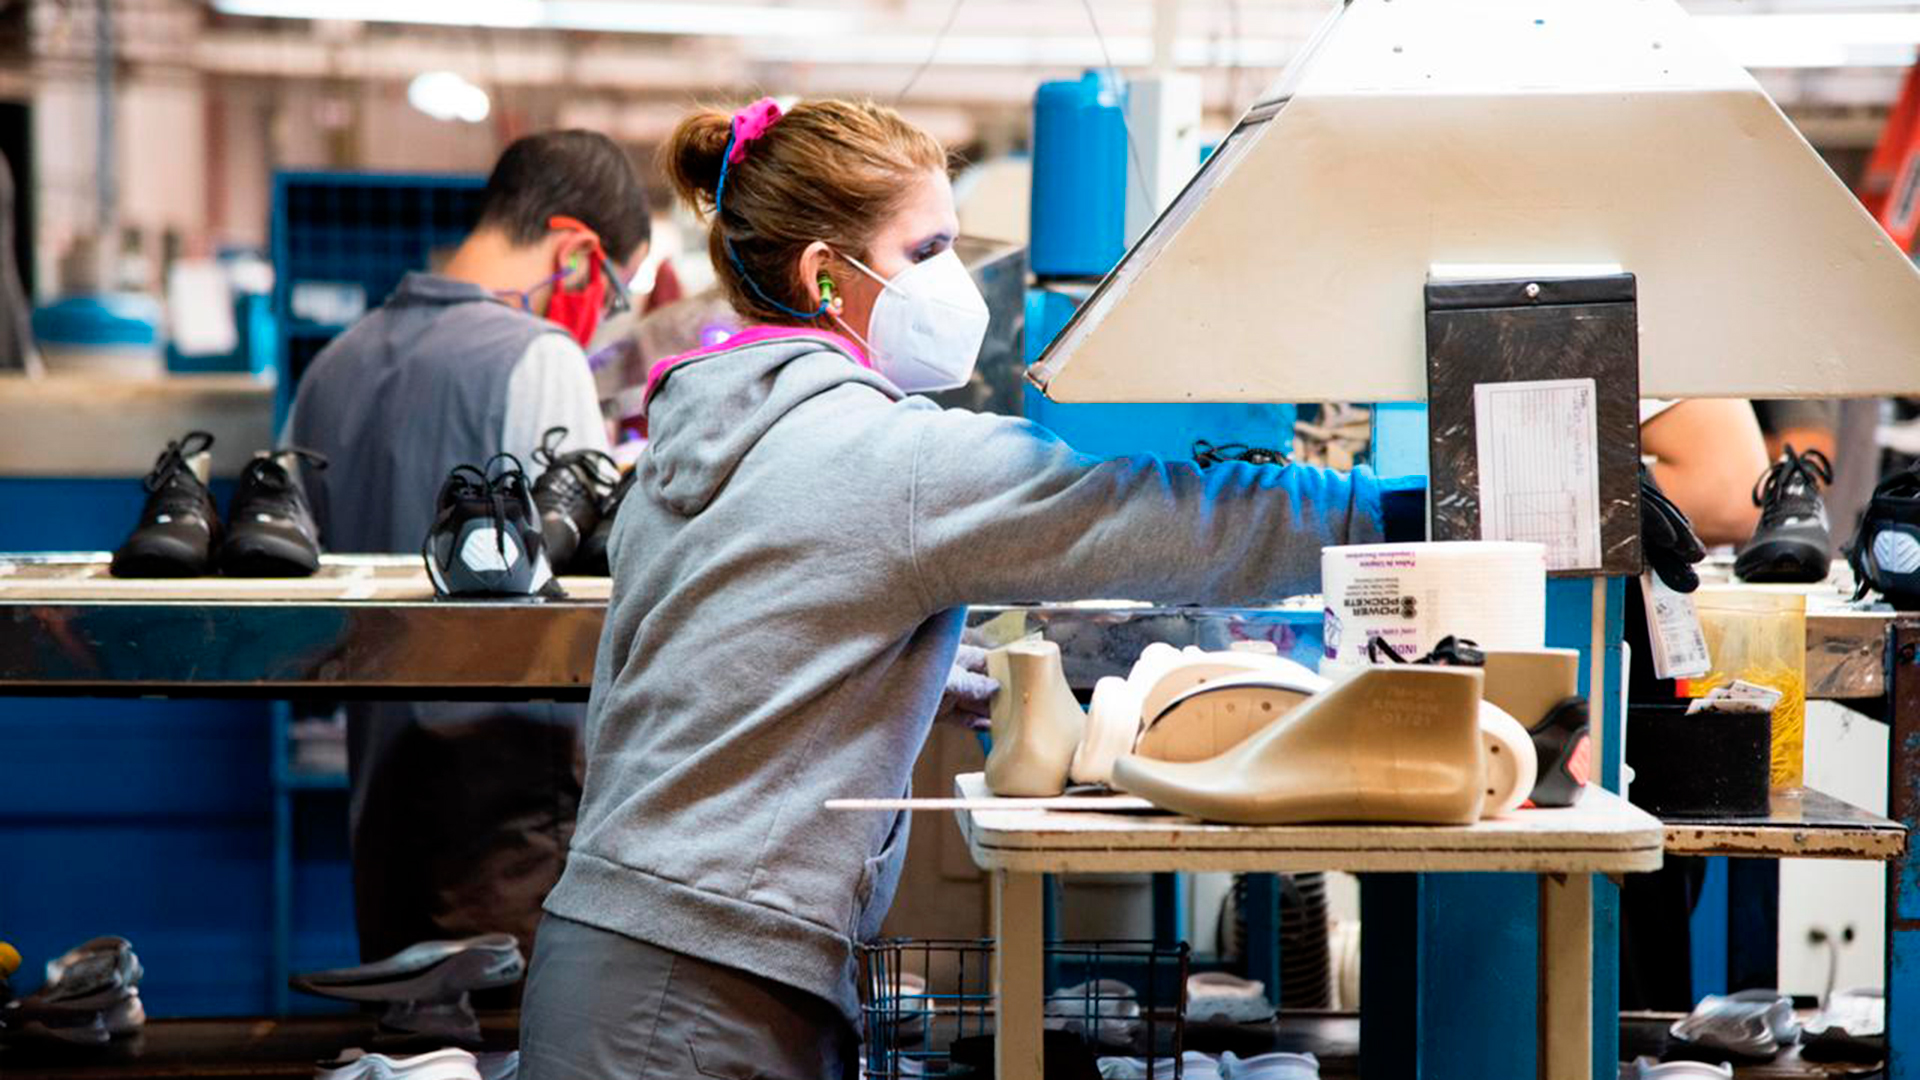 La planta de Misiones sustenta 567 familias, produce 14.000 pares por día y es el mayor empleador de Eldorado